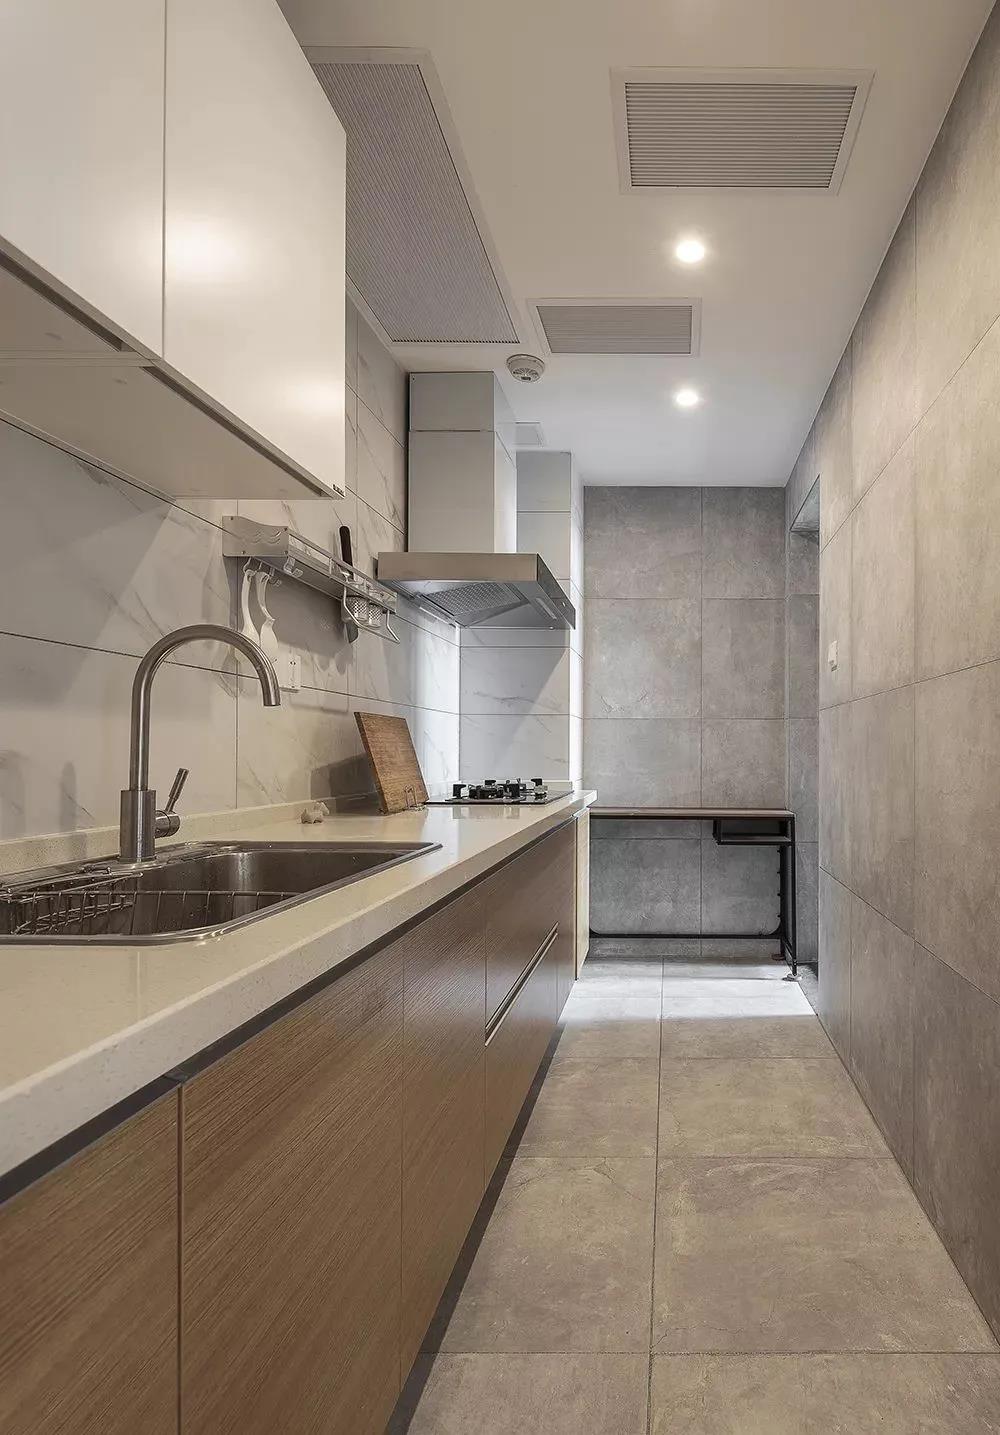 厨房空间在视觉上创造了轻松、明朗、亲切的空间环境，动线设计合理。